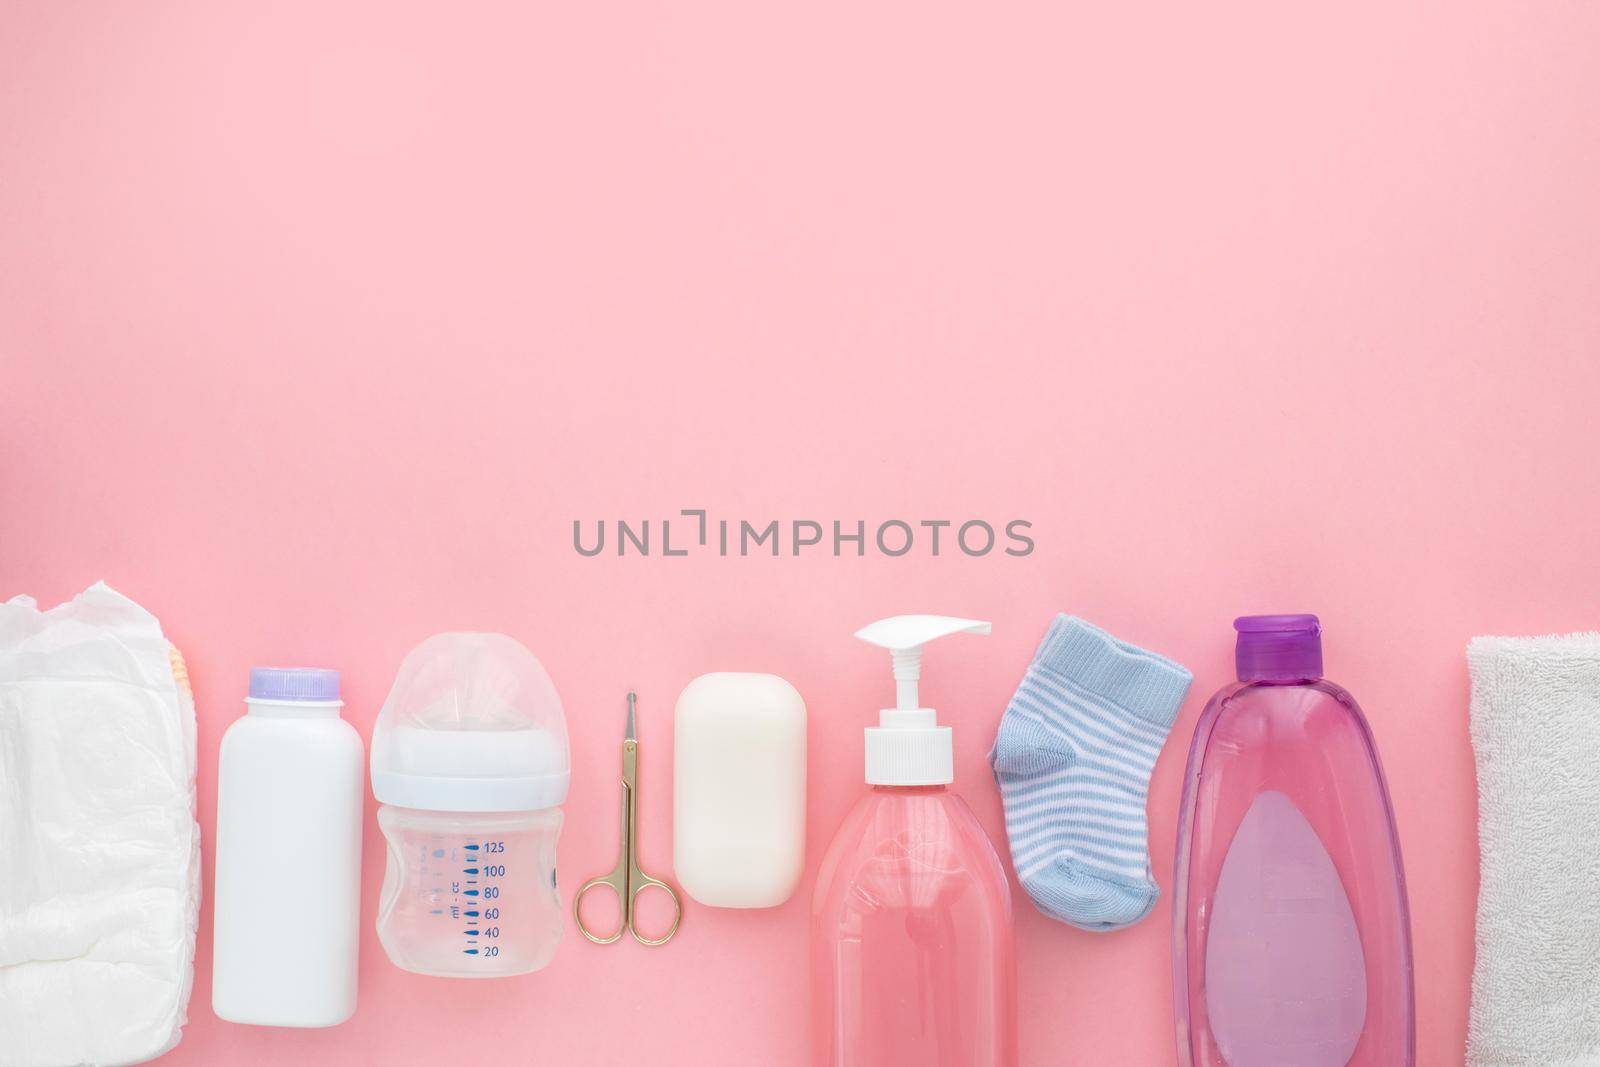 Children's hygiene unisex newborn baby necessities by Demkat